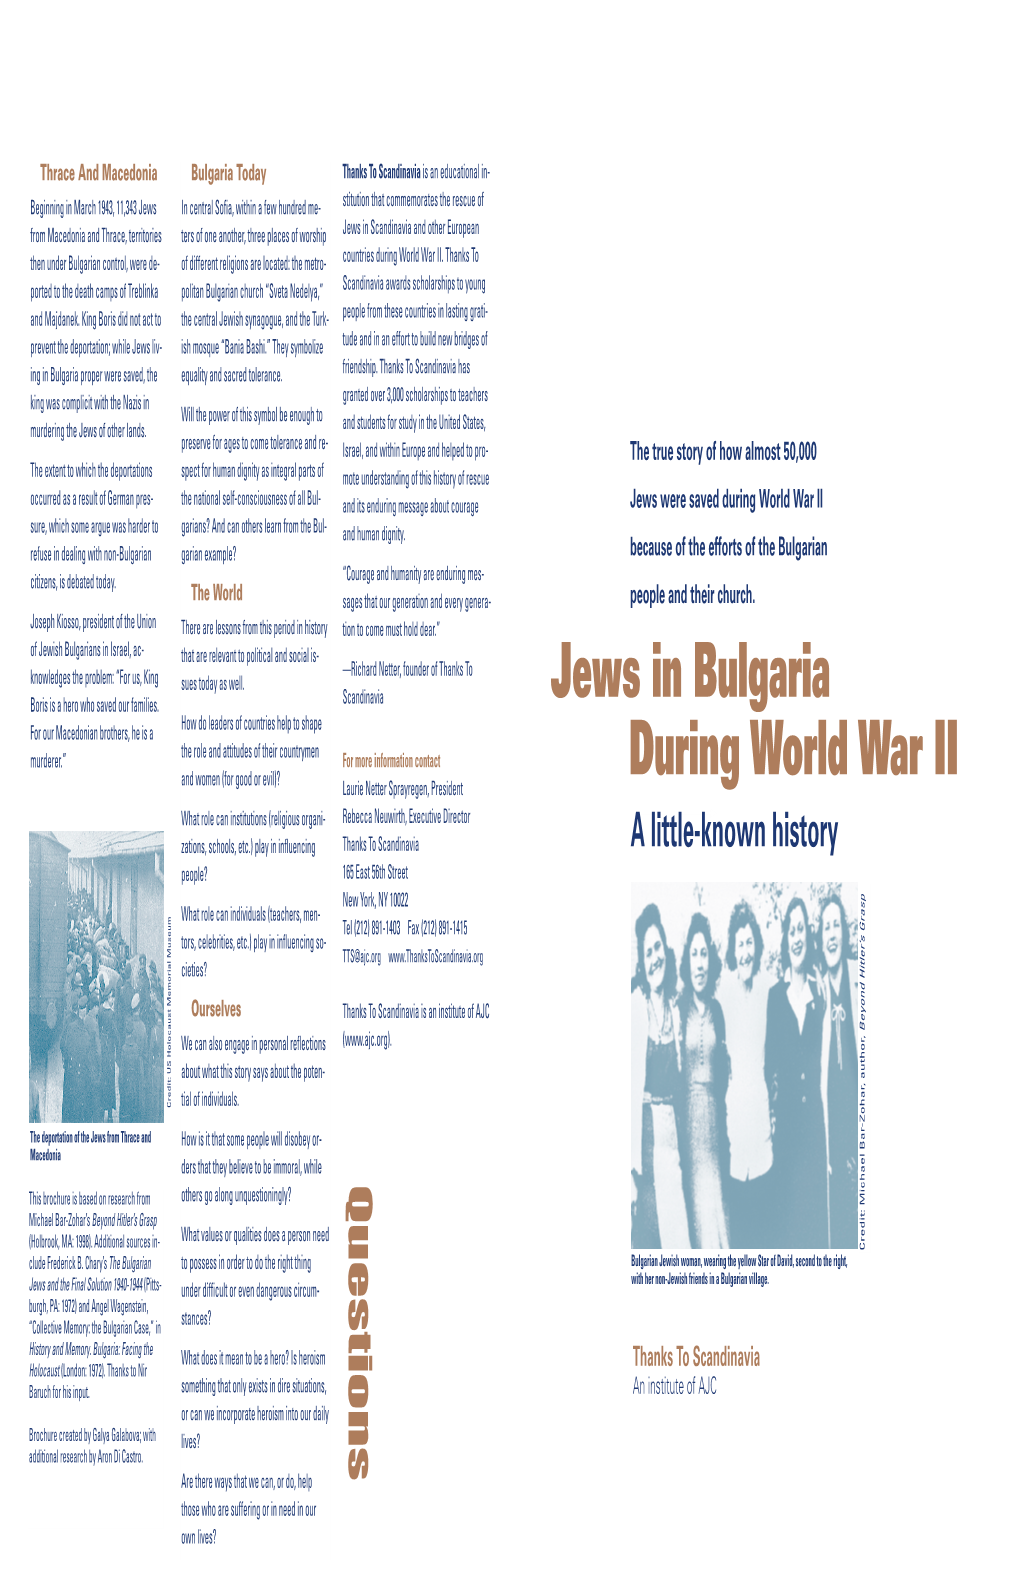 Jews in Bulgaria During World War II